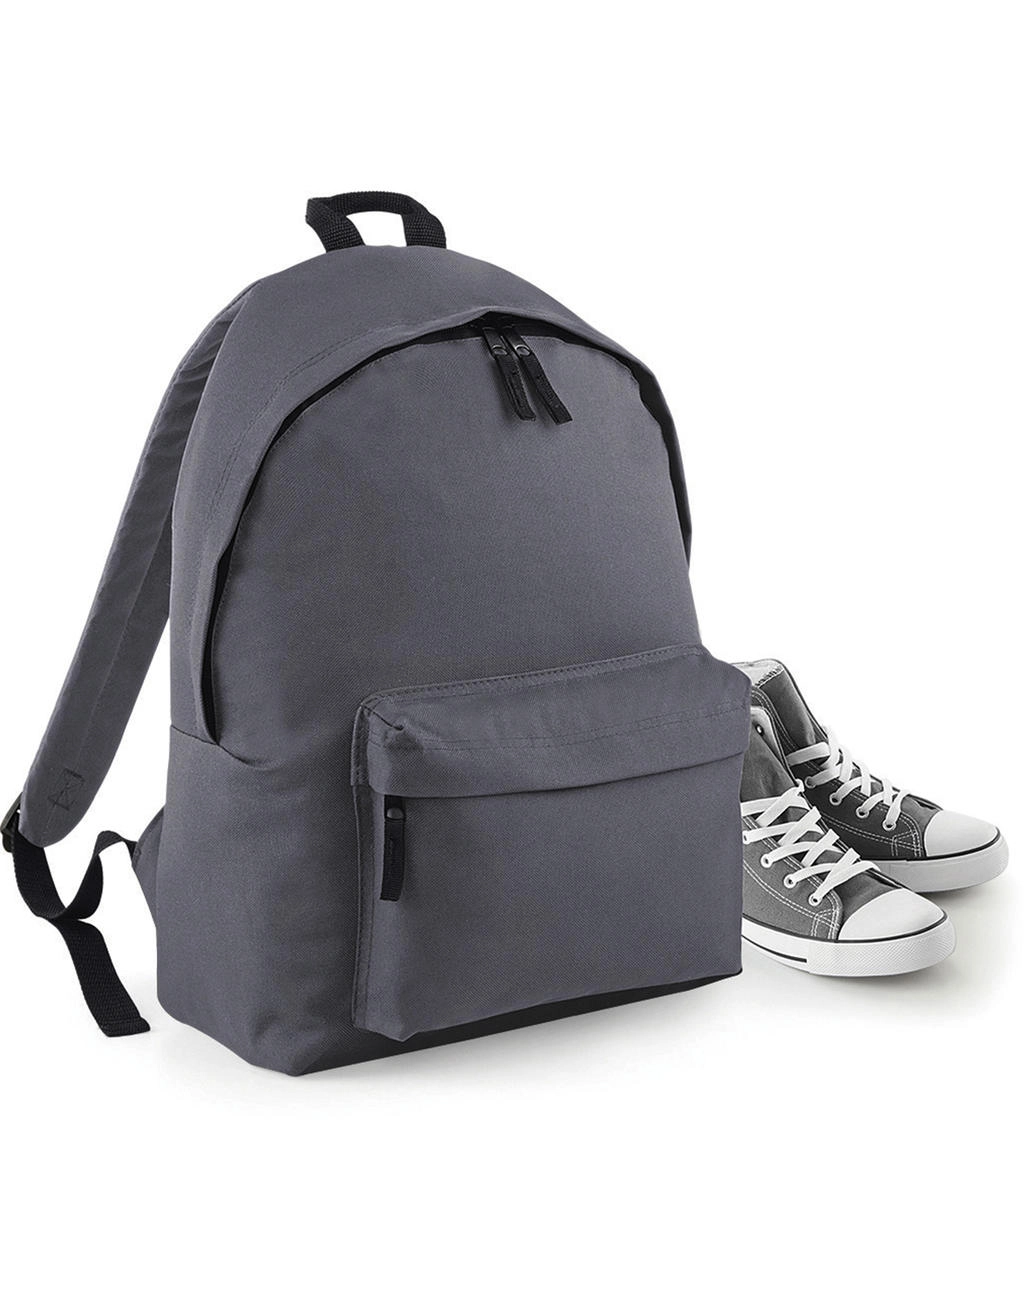 Maxi Fashion Backpack zum Besticken und Bedrucken mit Ihren Logo, Schriftzug oder Motiv.